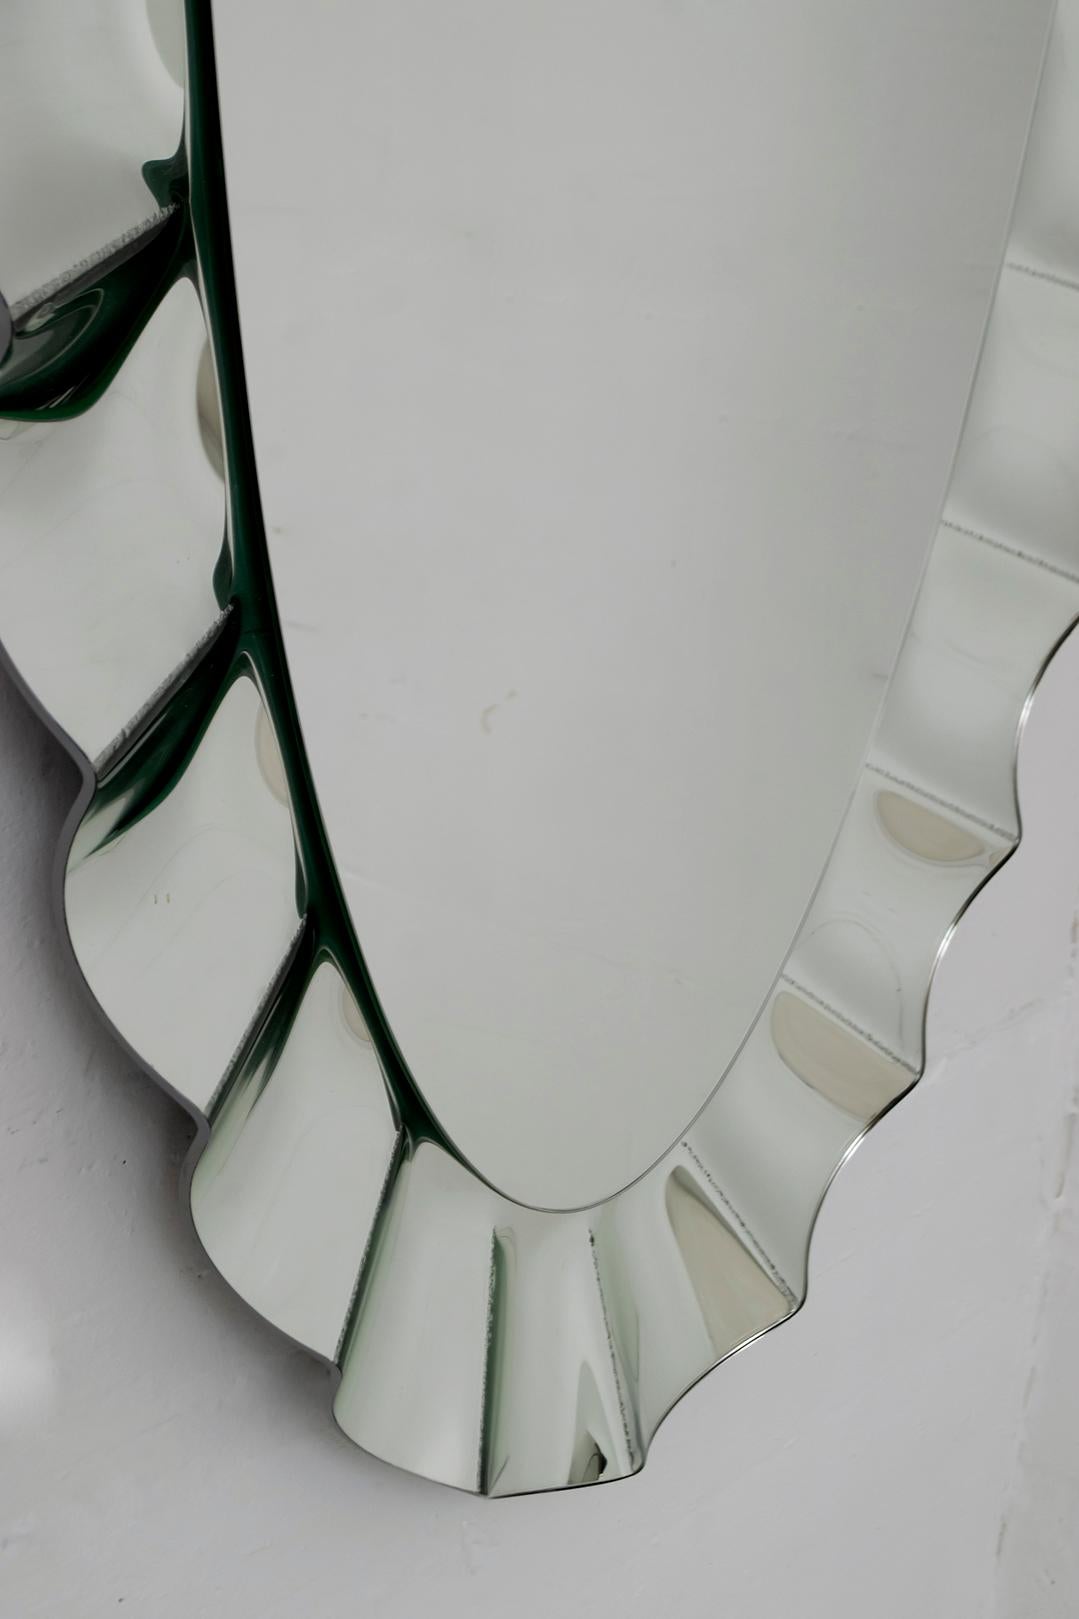 Imposanter ovaler Spiegel, eingerahmt von einem größeren gewellten Spiegel. Die Rückwand hat einen Einsatz für die vertikale und horizontale Aufhängung. Hochwertige Materialien und Verarbeitung